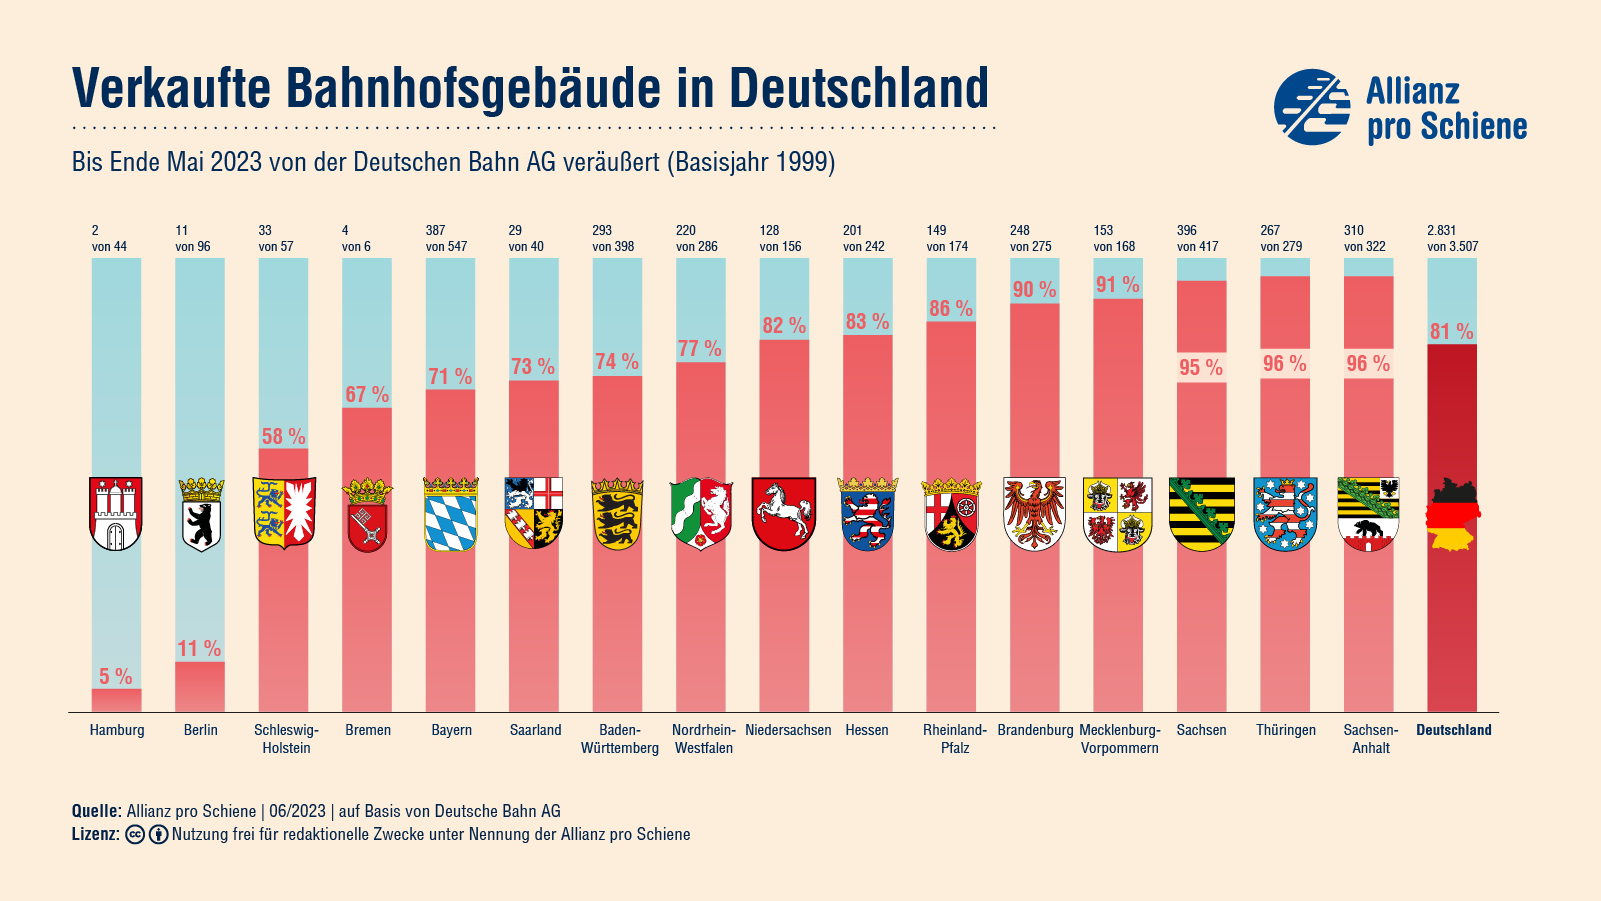 Seit 1999 wurden 2824 von 3507 Bahnhofsgebäuden von der DB AG veräußert. Das ergibt einen Anteil von 81%, wobei es deutliche Unterschiede zwischen den einzelnen Bundesländern gibt.